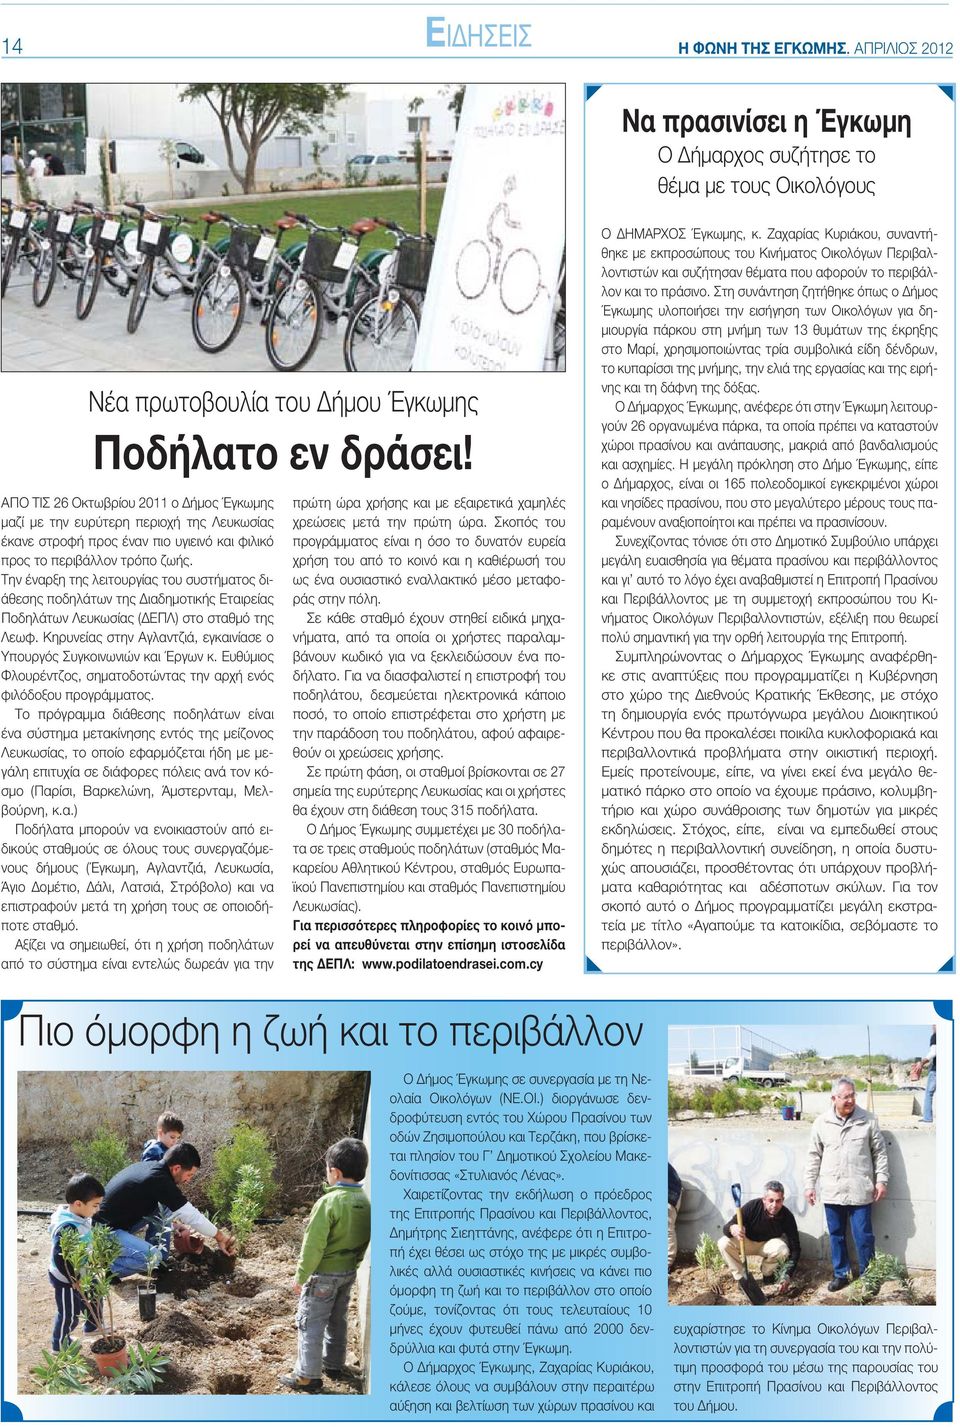 Την έναρξη της λειτουργίας του συστήματος διάθεσης ποδηλάτων της Διαδημοτικής Εταιρείας Ποδηλάτων Λευκωσίας (ΔΕΠΛ) στο σταθμό της Λεωφ.